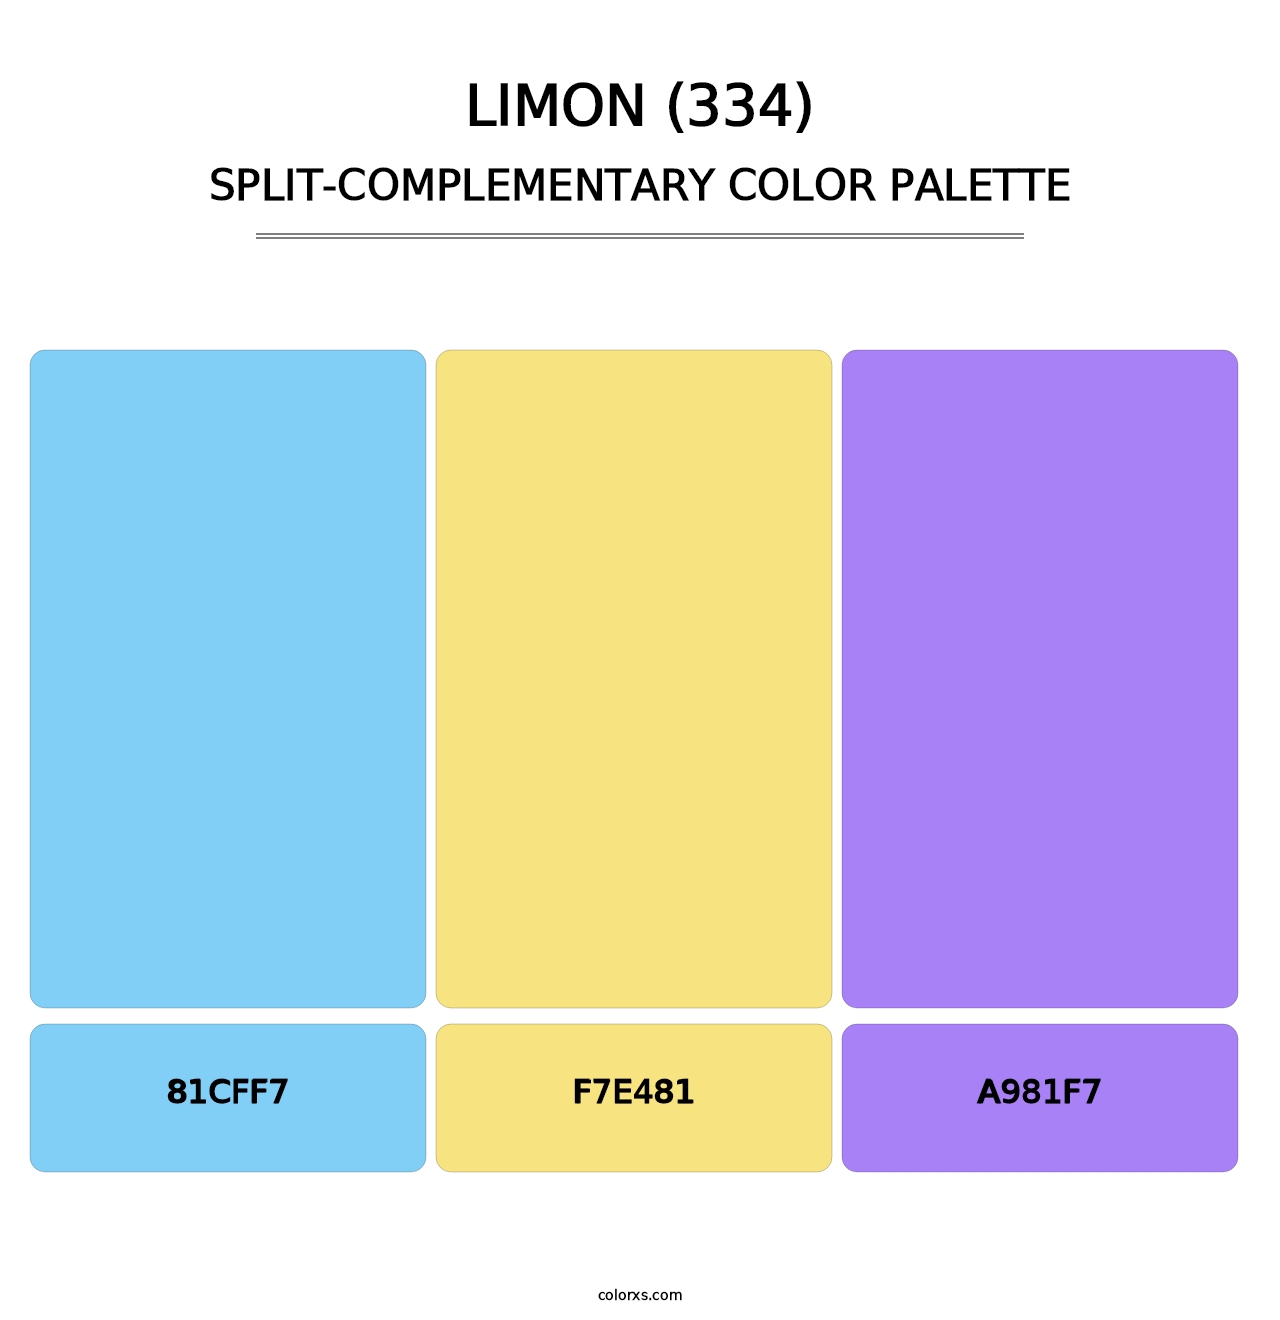 Limon (334) - Split-Complementary Color Palette